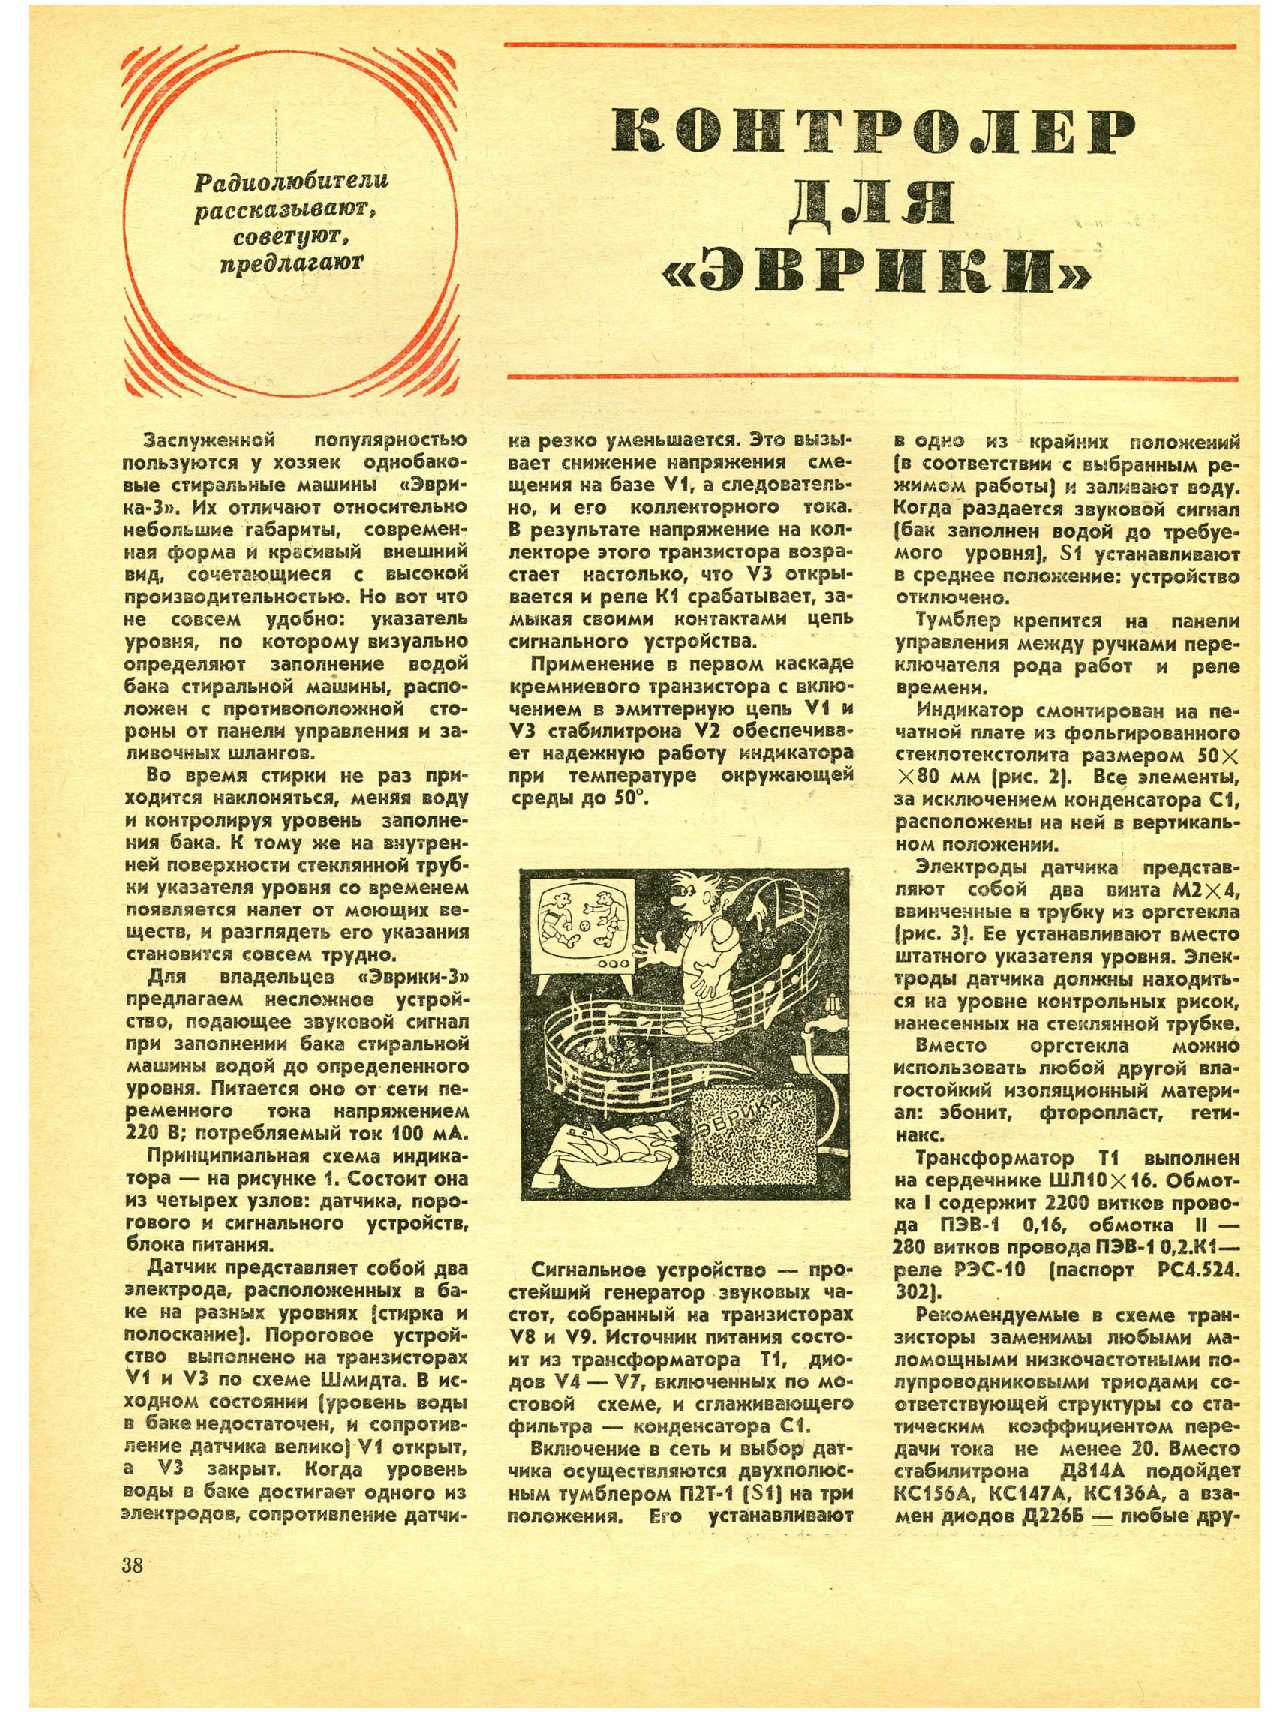 МК 7, 1978, 38 c.